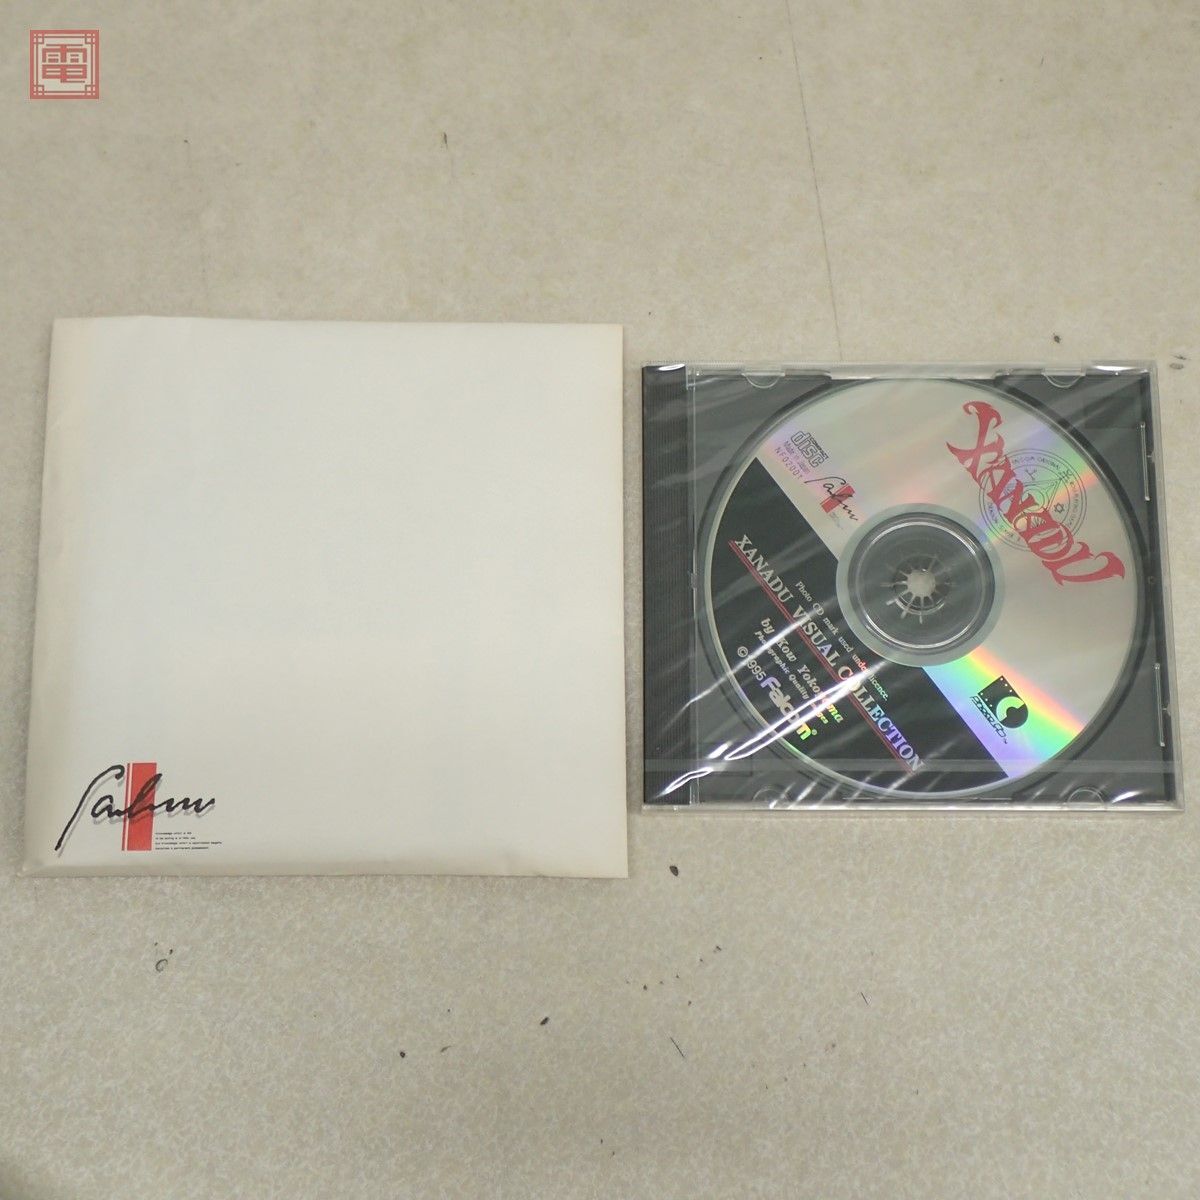 未使用 PC-9801 3.5インチFD リバイバル ザナドゥ Revival XANADU Falcom ファルコム 箱説・CD-ROM付【20_画像2